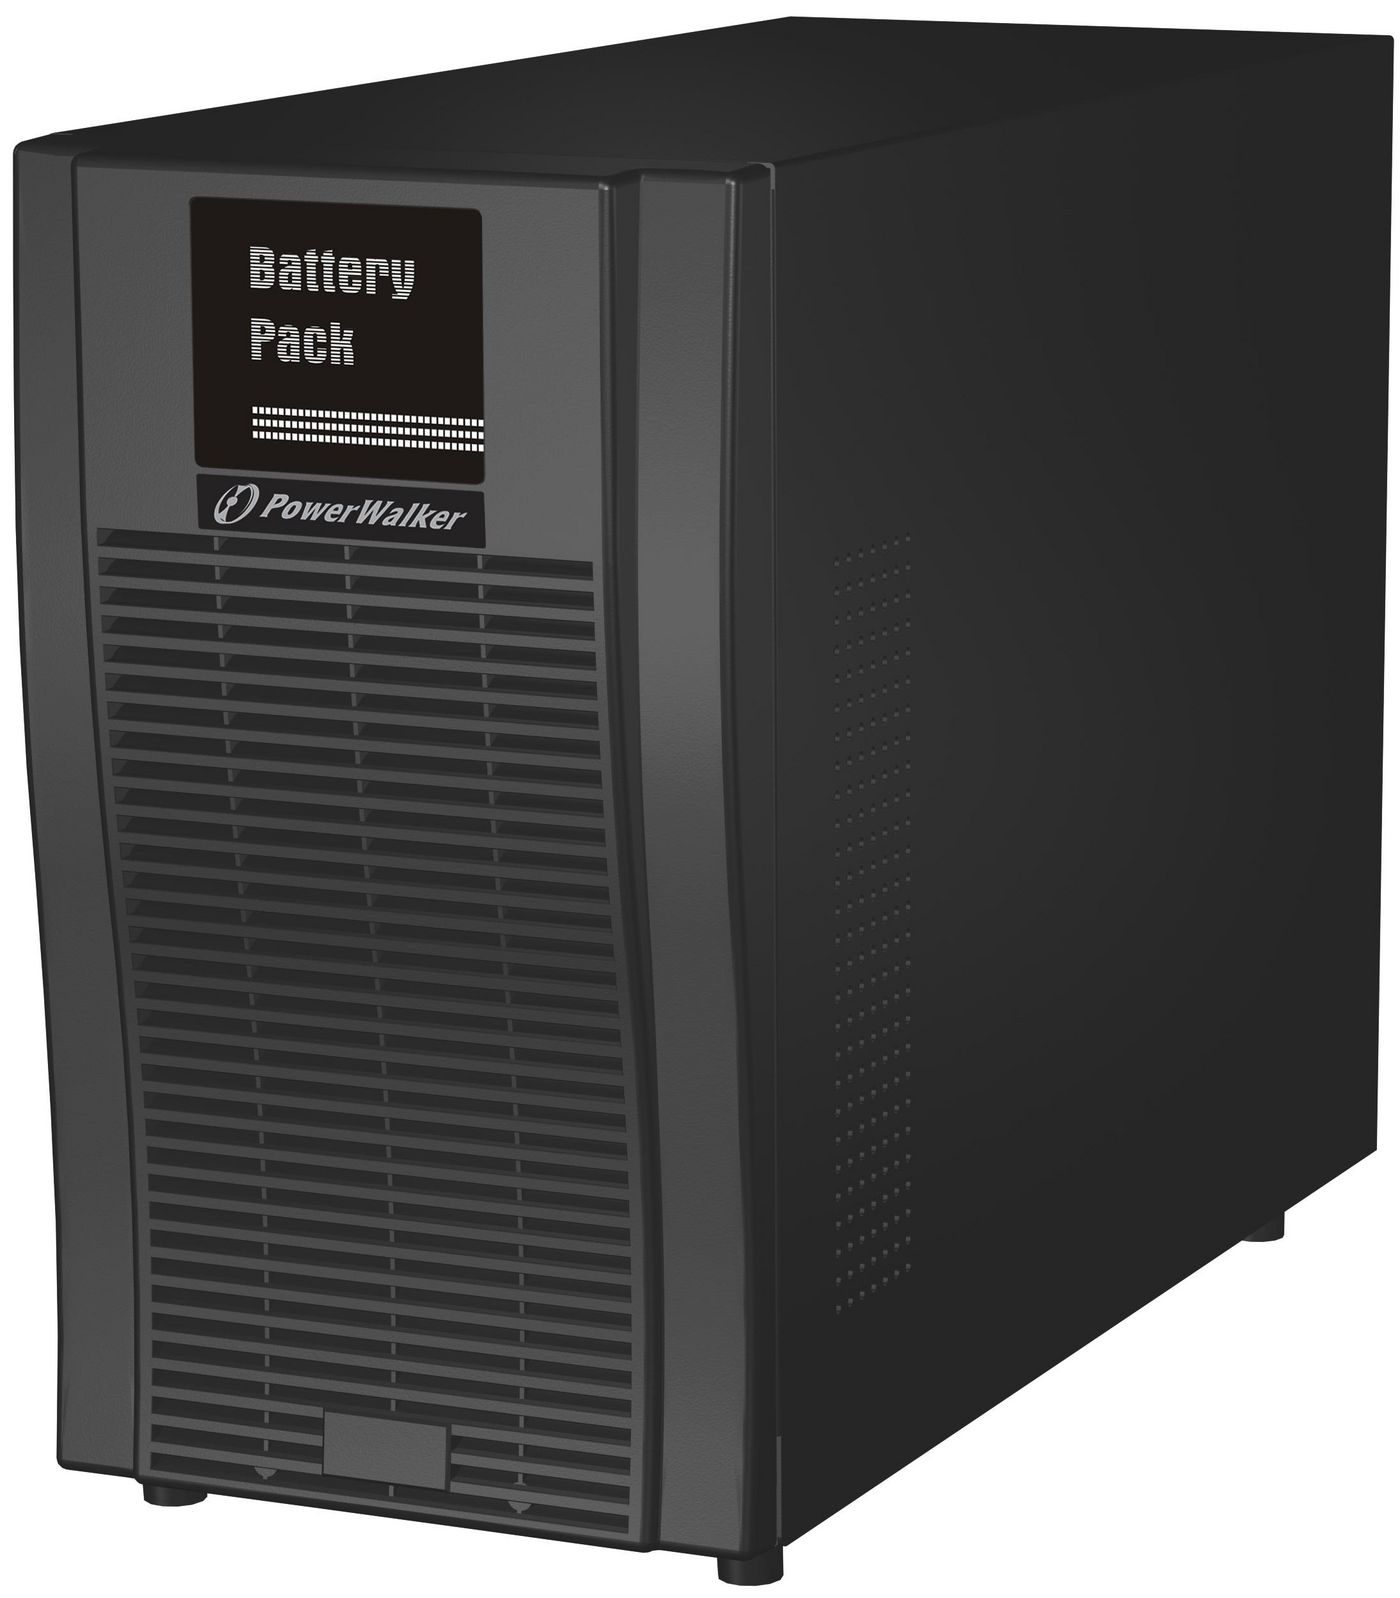 PowerWalker 10120567 Battery Pack for VFI 2000T300 